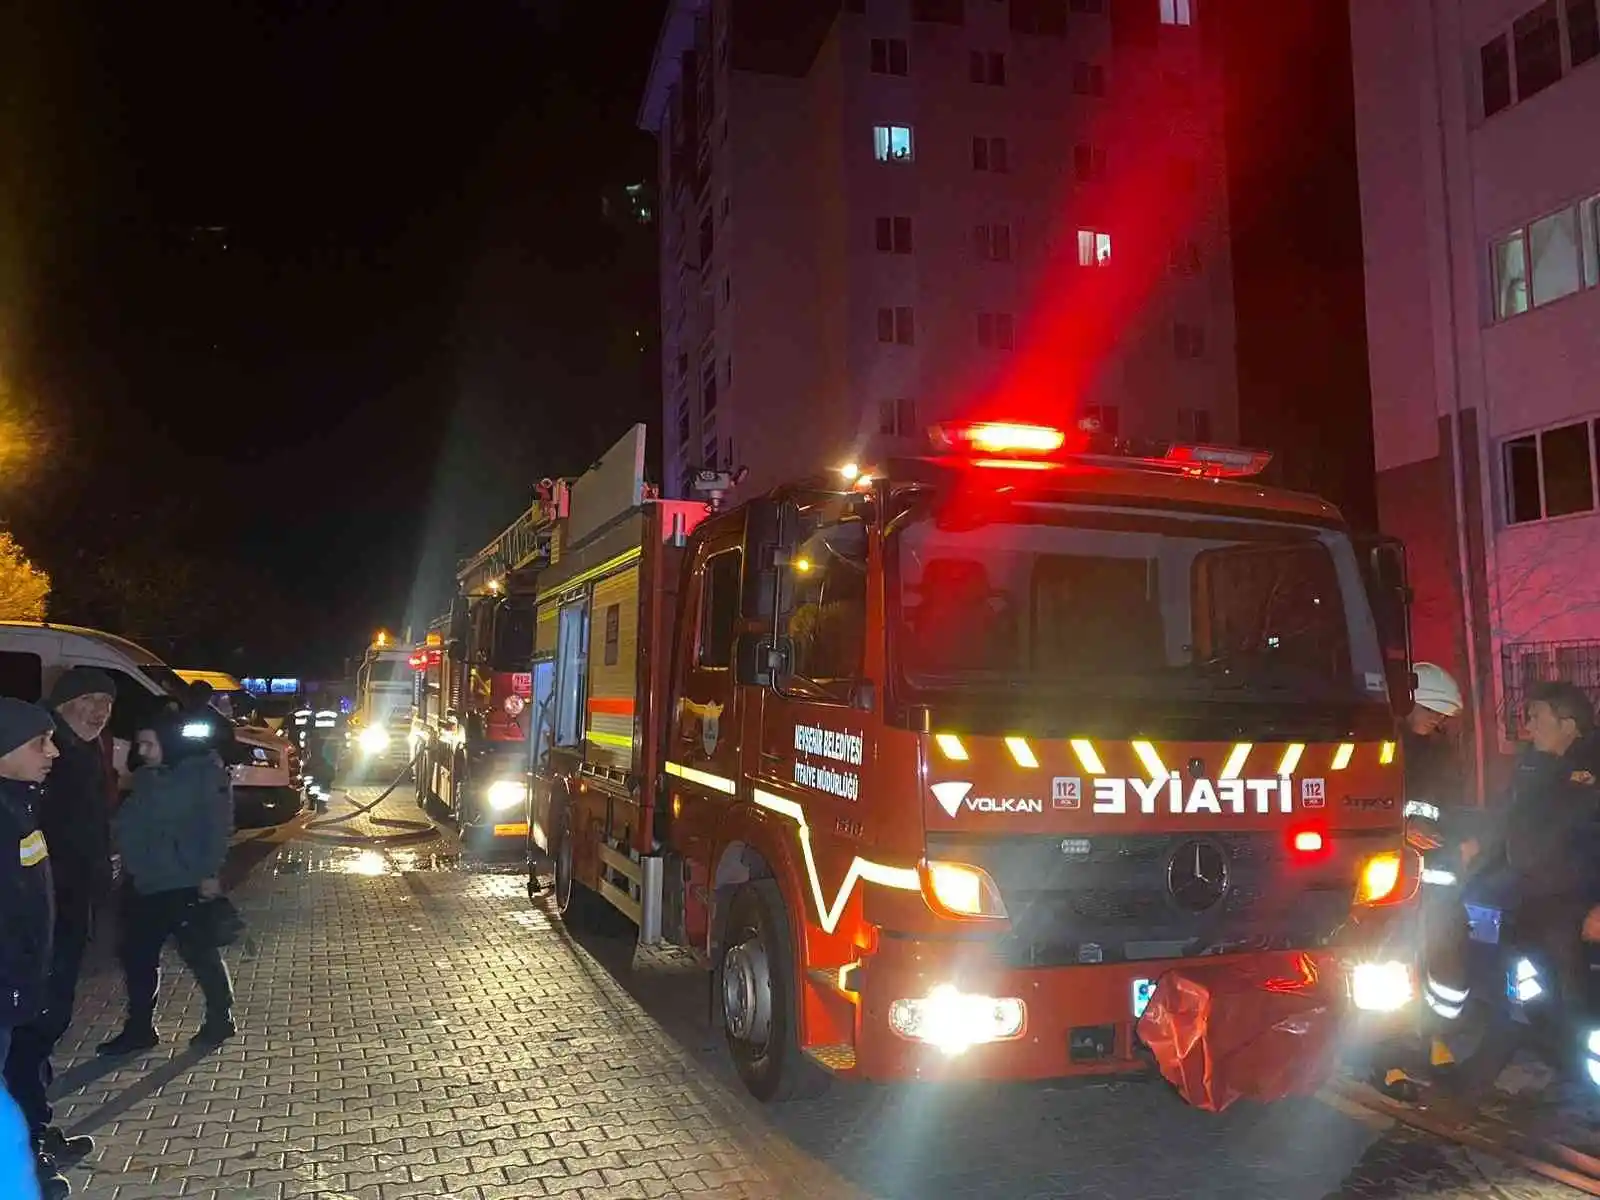 Nevşehir'de yangından 6 kişi zehirlendi
